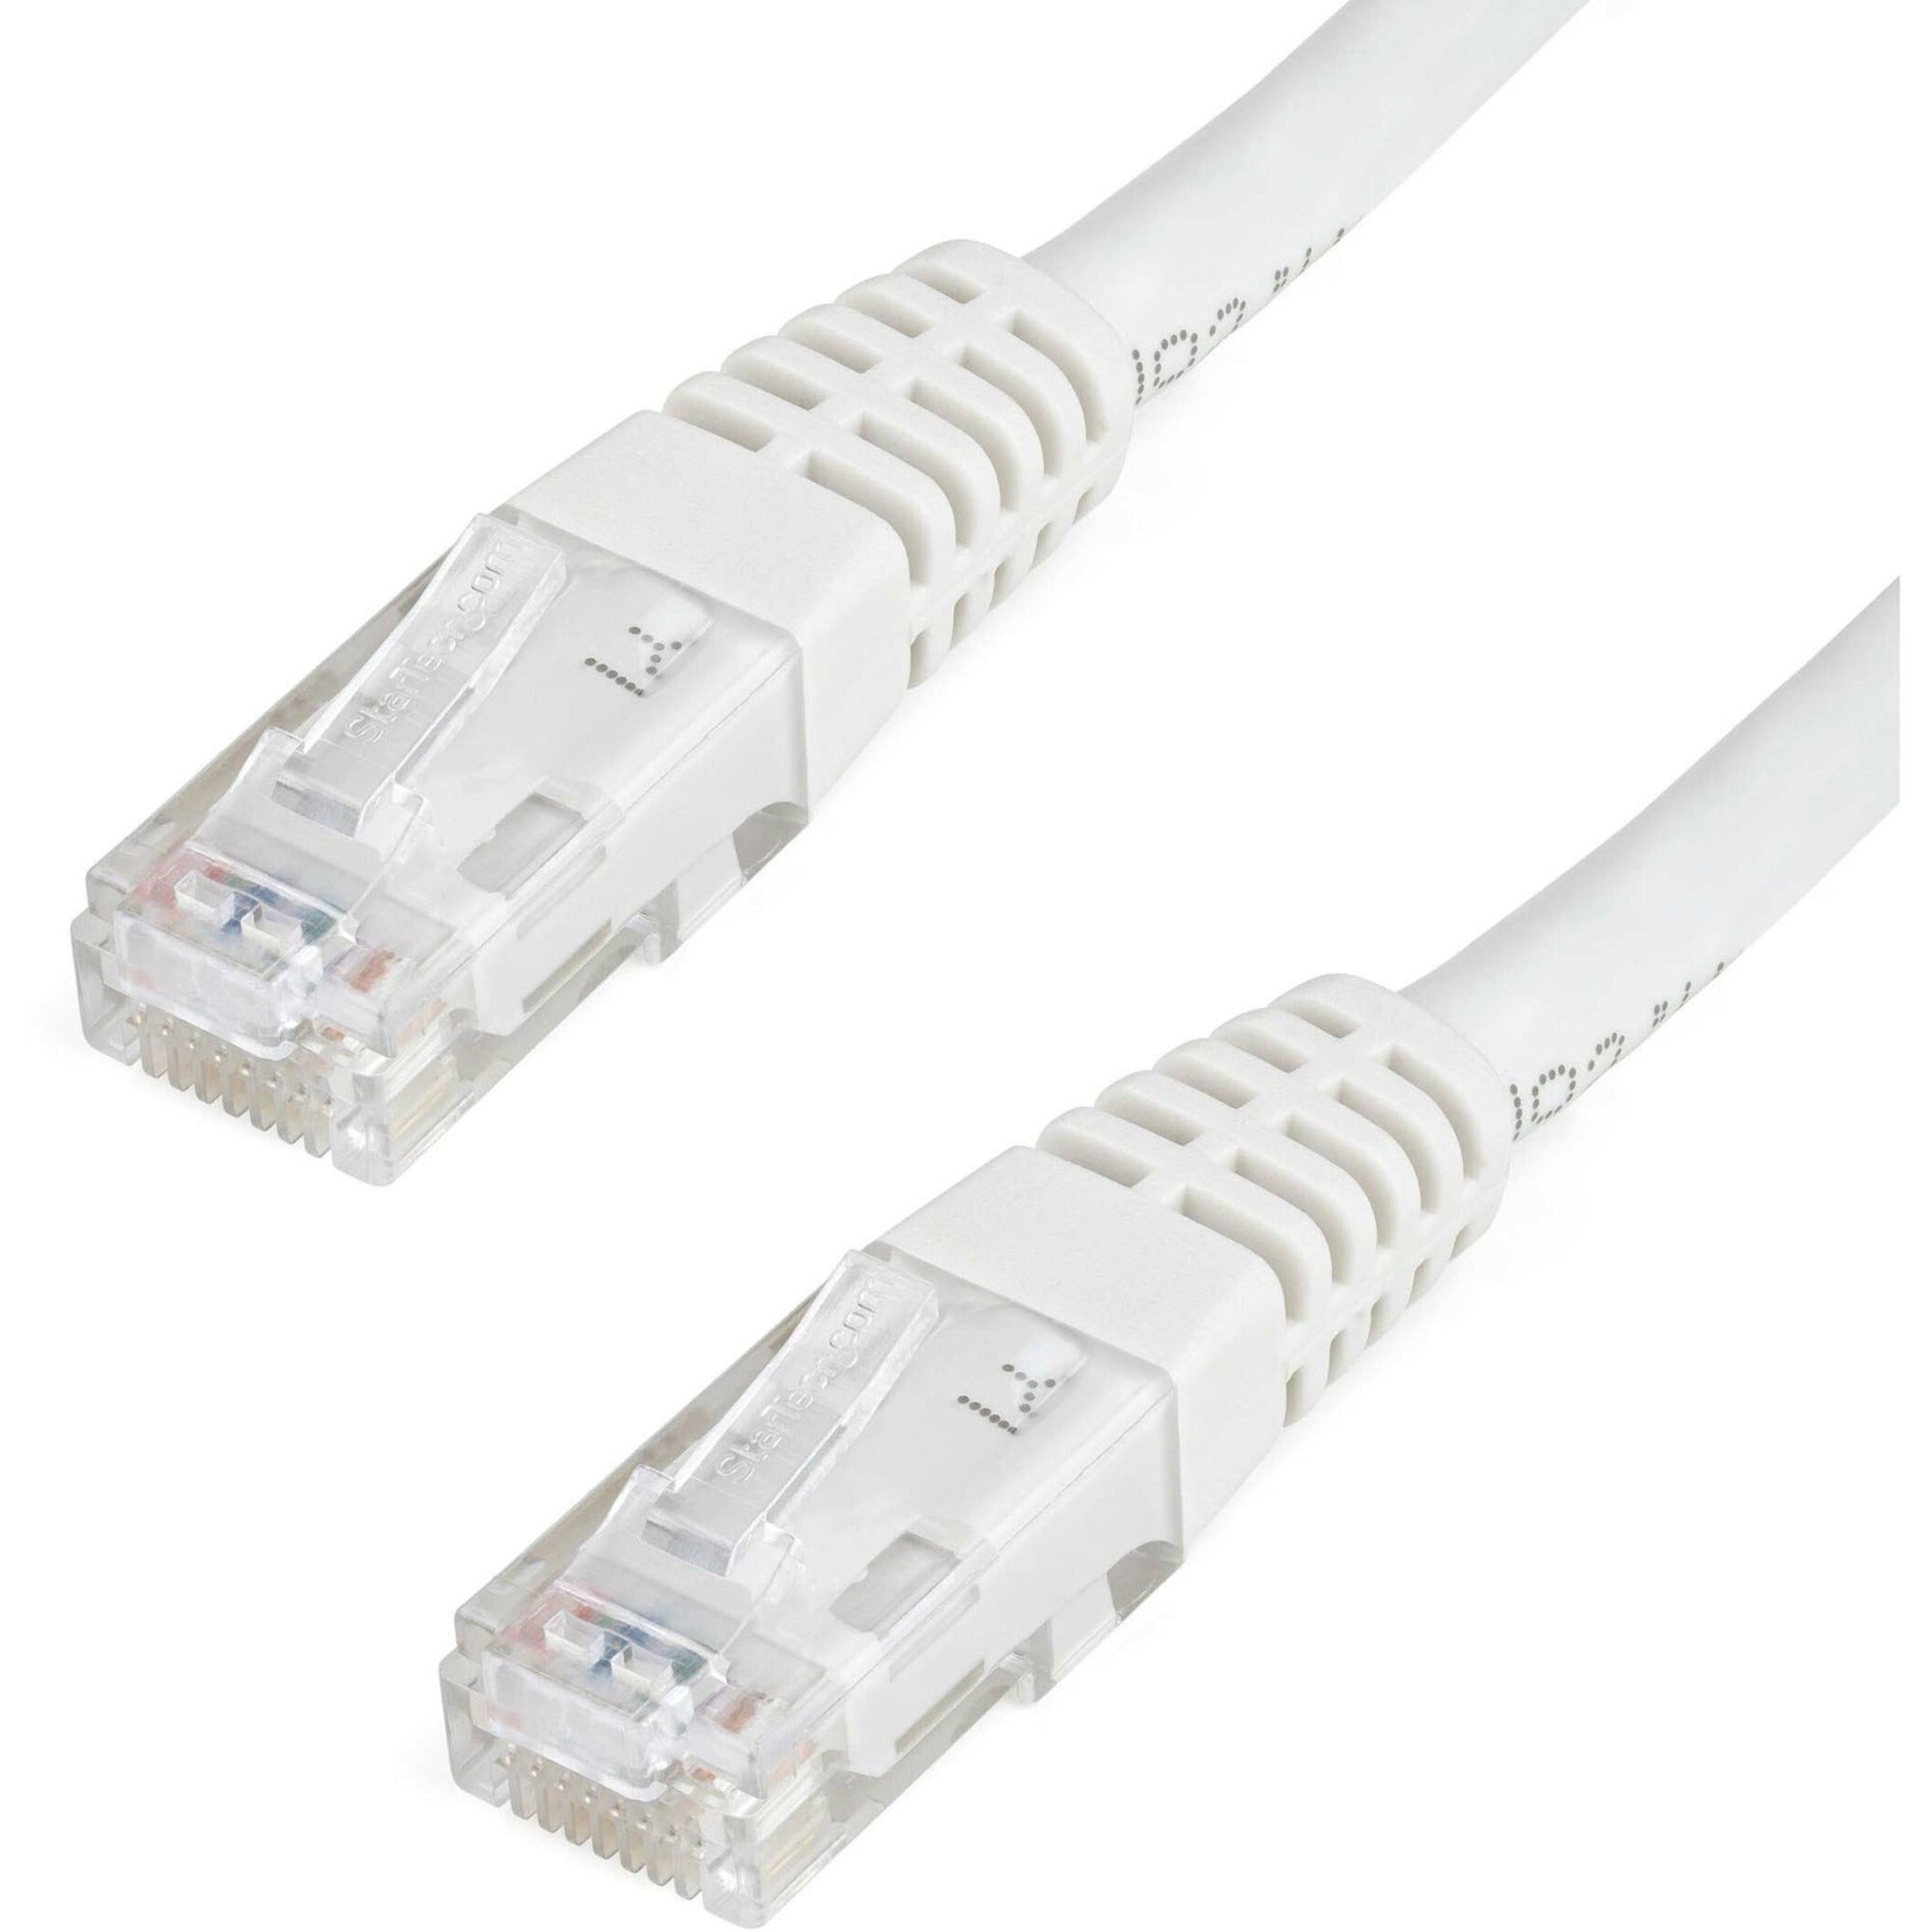 Startech.com C6PATCH4WH 4英尺白色Cat6 UTP Patch电缆 ETL验证，抗磨损，成型，PoE，应变缓解，耐损坏，耐腐蚀，耐锈，耐弯曲，绞线，PoE++，无卡口，10 Gbit/s